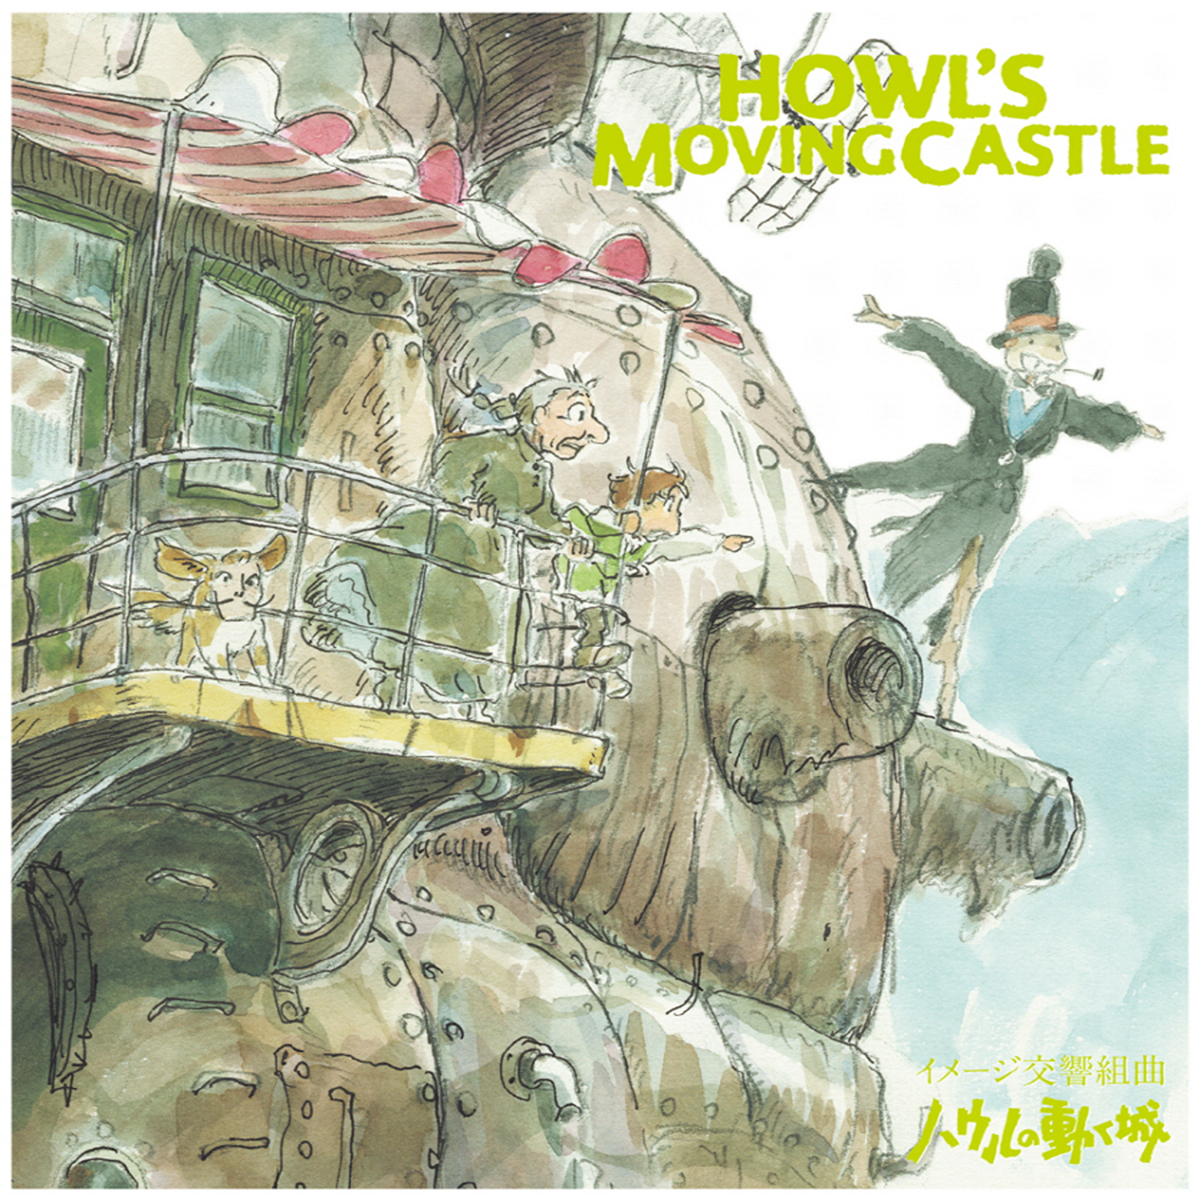 30cm x 40cm Close Up Howls Moving Castle Kunstdruck Japanese 